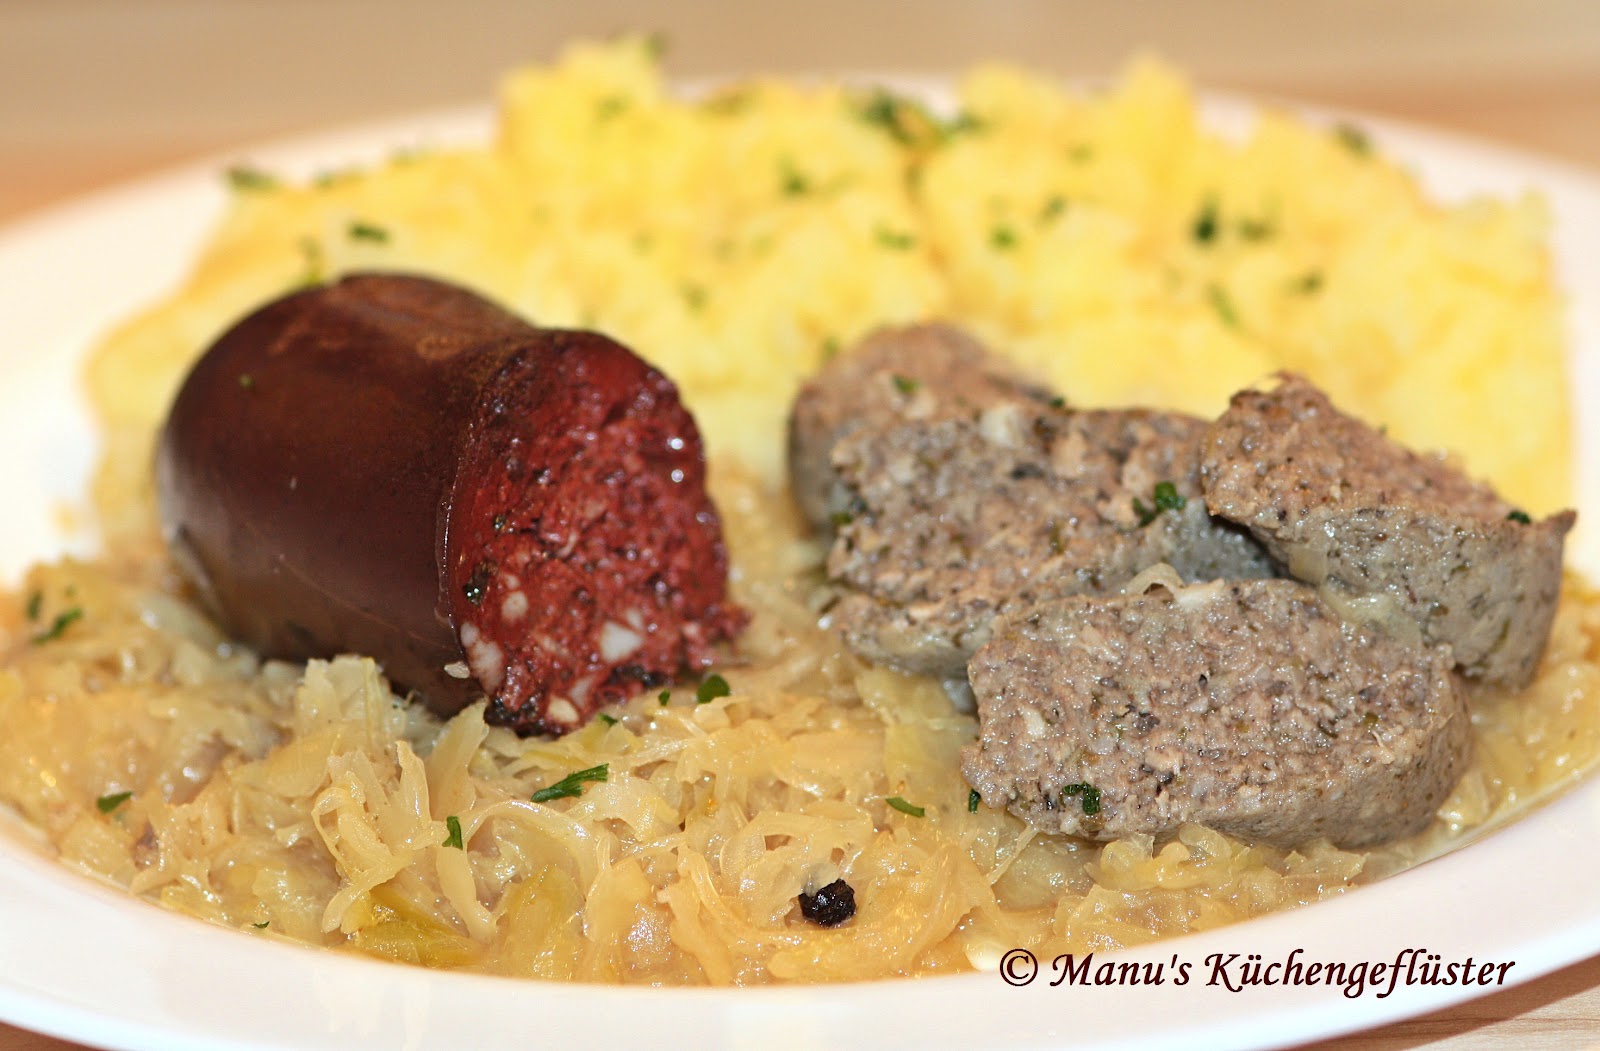 Manus Küchengeflüster: Blut- und Leberwürscht mit Sauerkraut